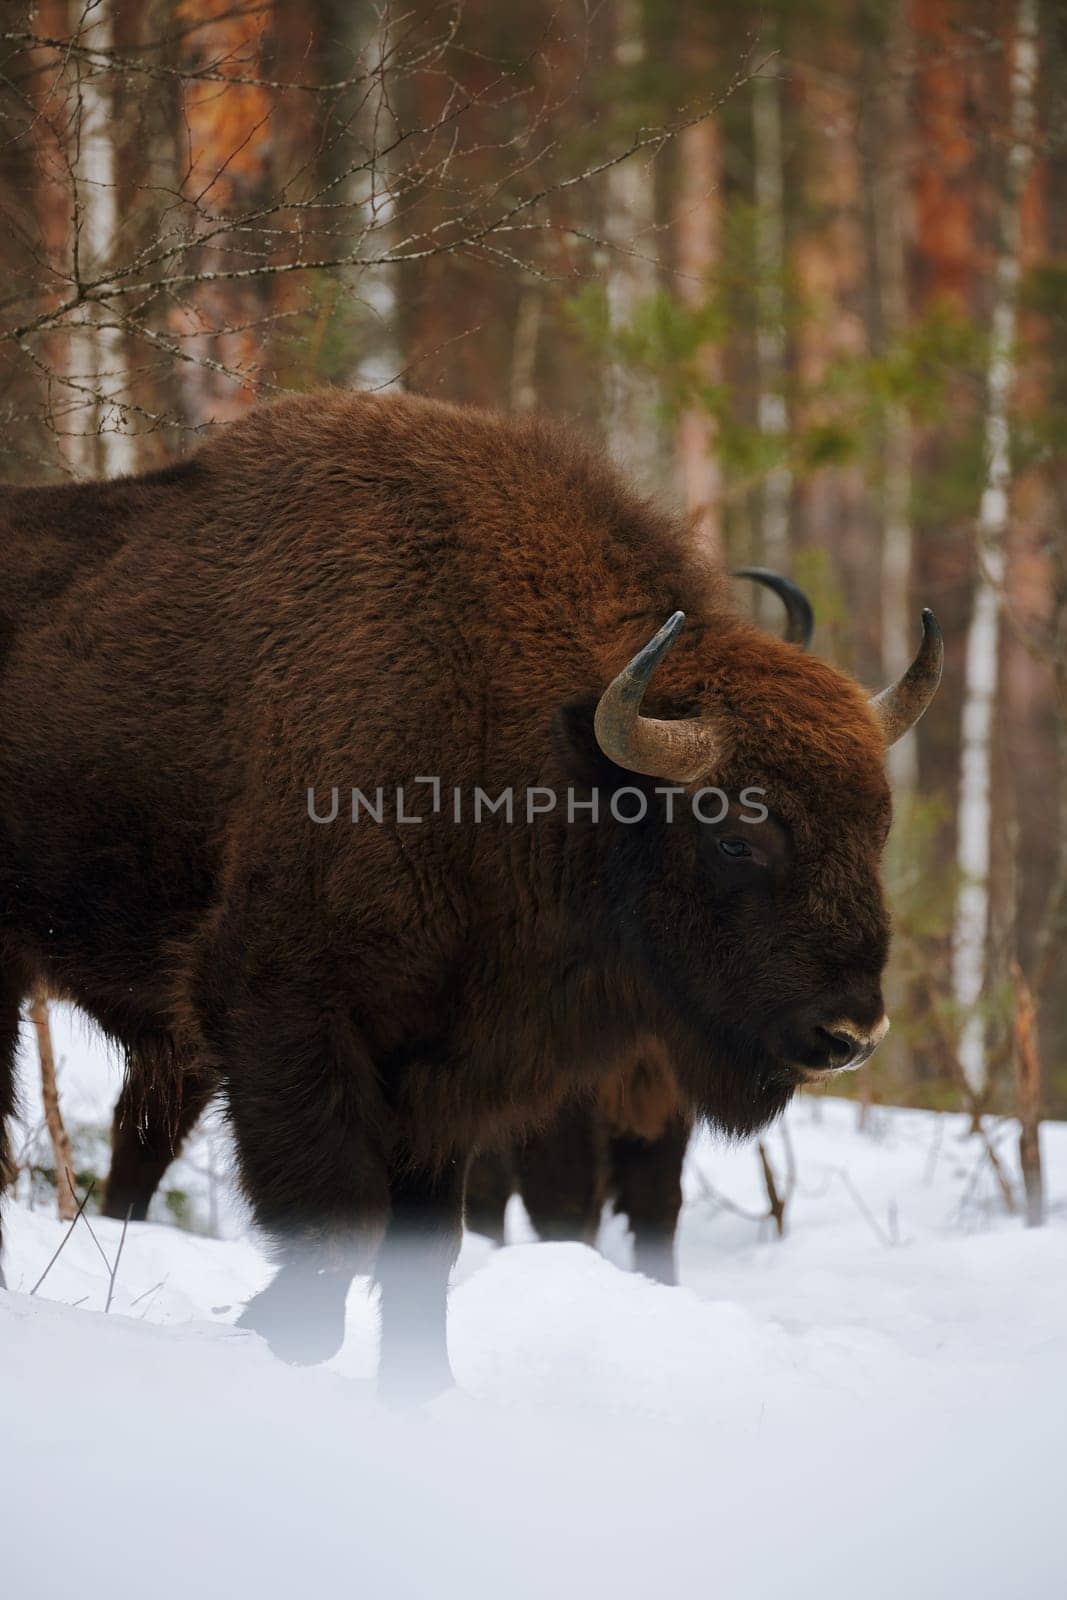 Wild European Bison in Winter Forest. European bison - Bison bonasus, artiodactyl mammals of the genus bison by EvgeniyQW